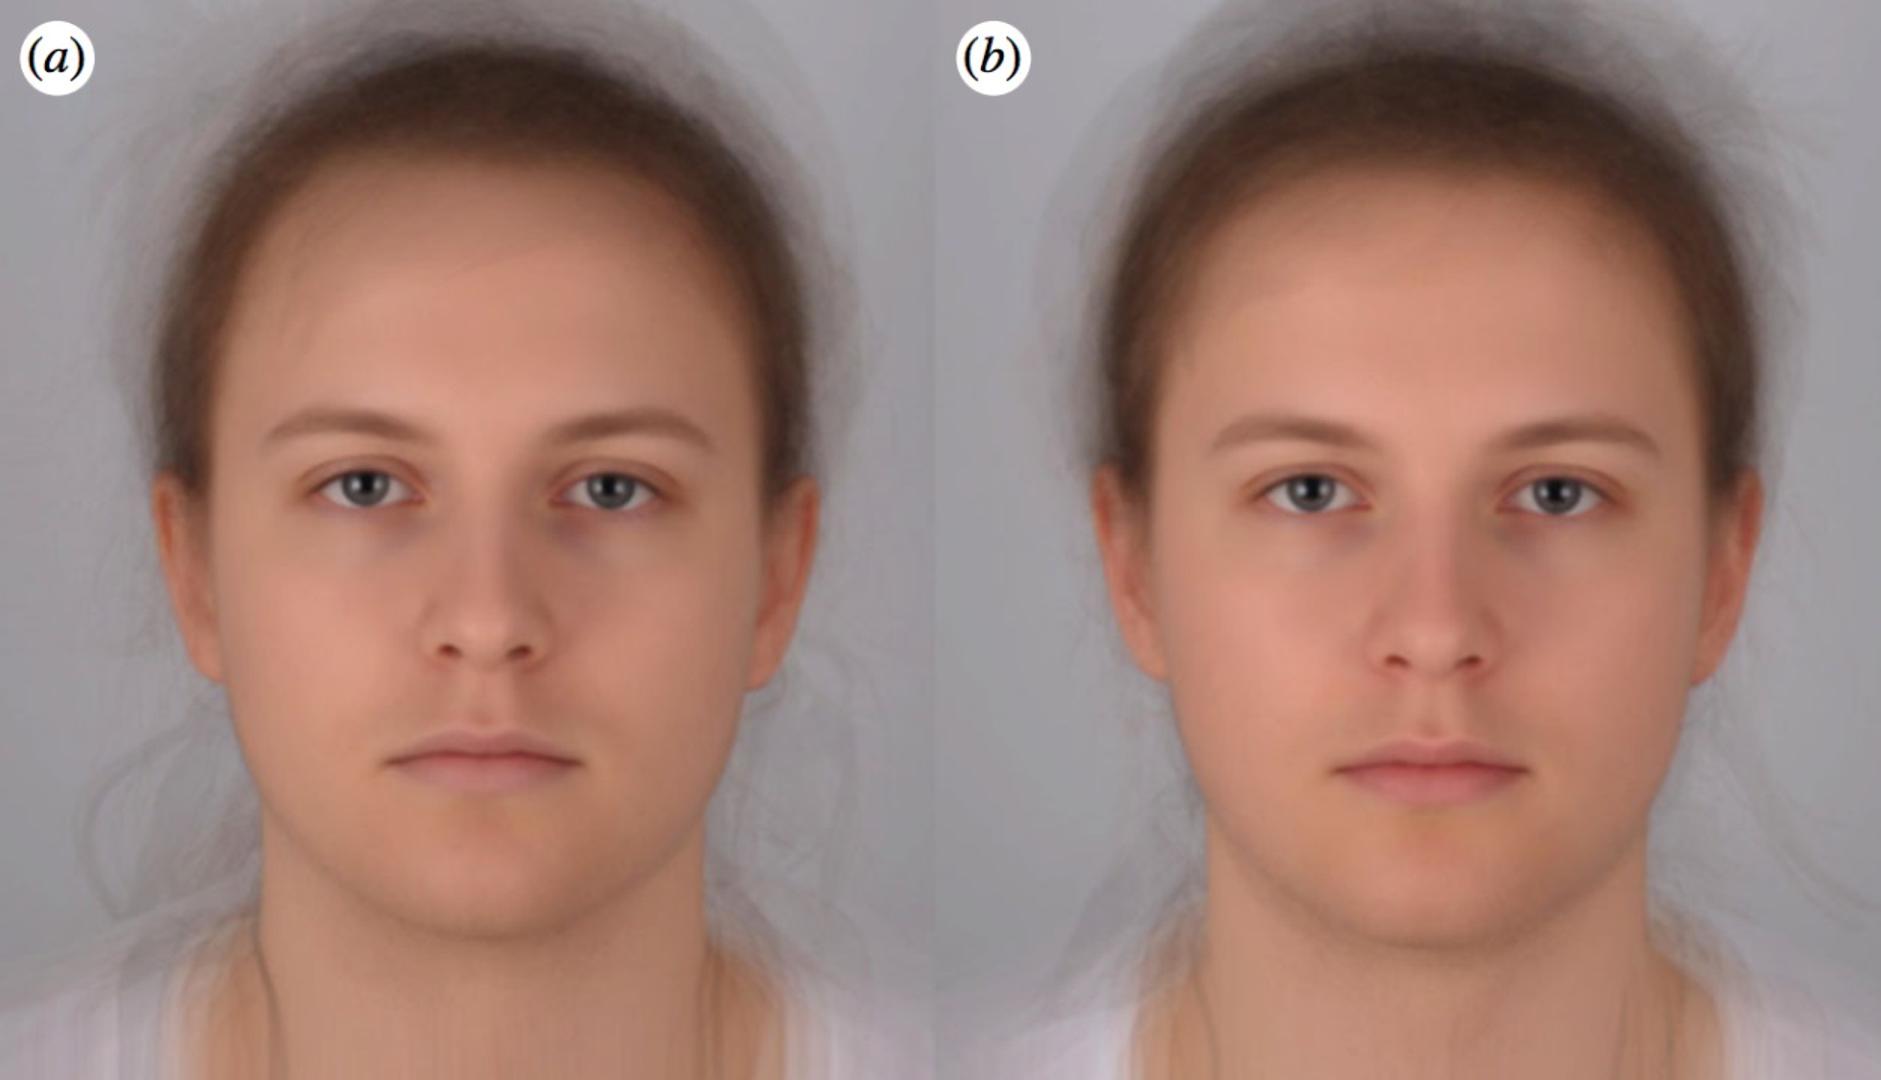 Lijevo - lice bolesne osobe i desno - lice zdrave osobe